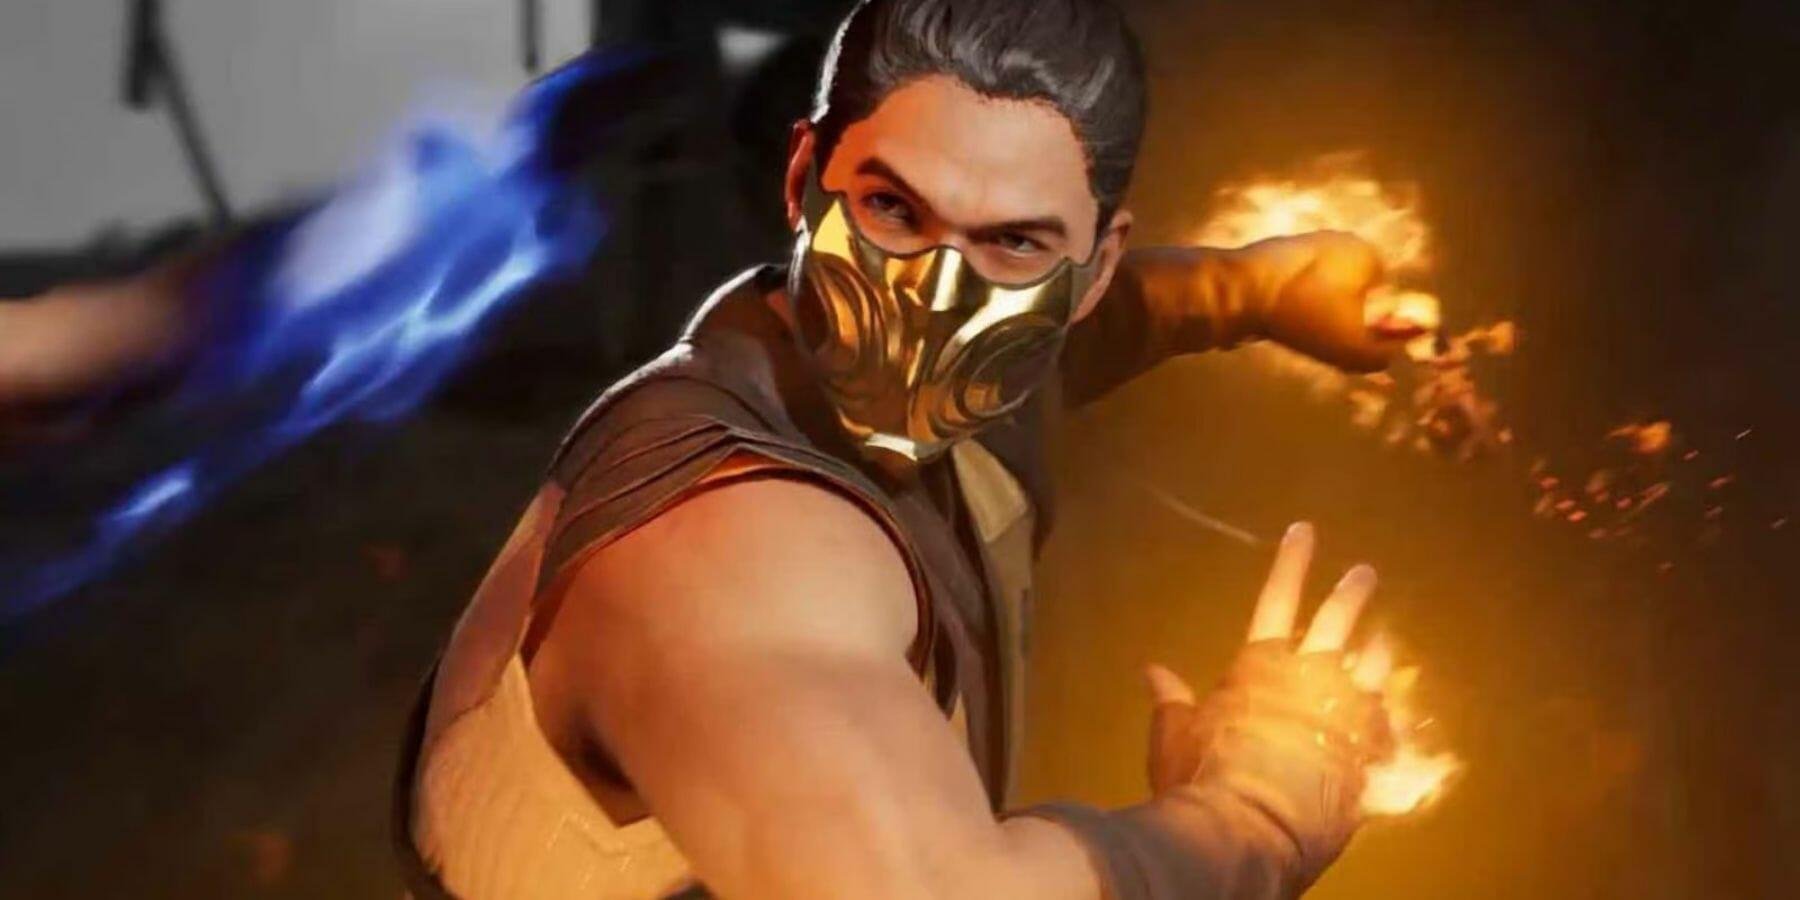 Mortal Kombat: os 8 melhores fatalities do novo filme (spoilers) - TecMundo